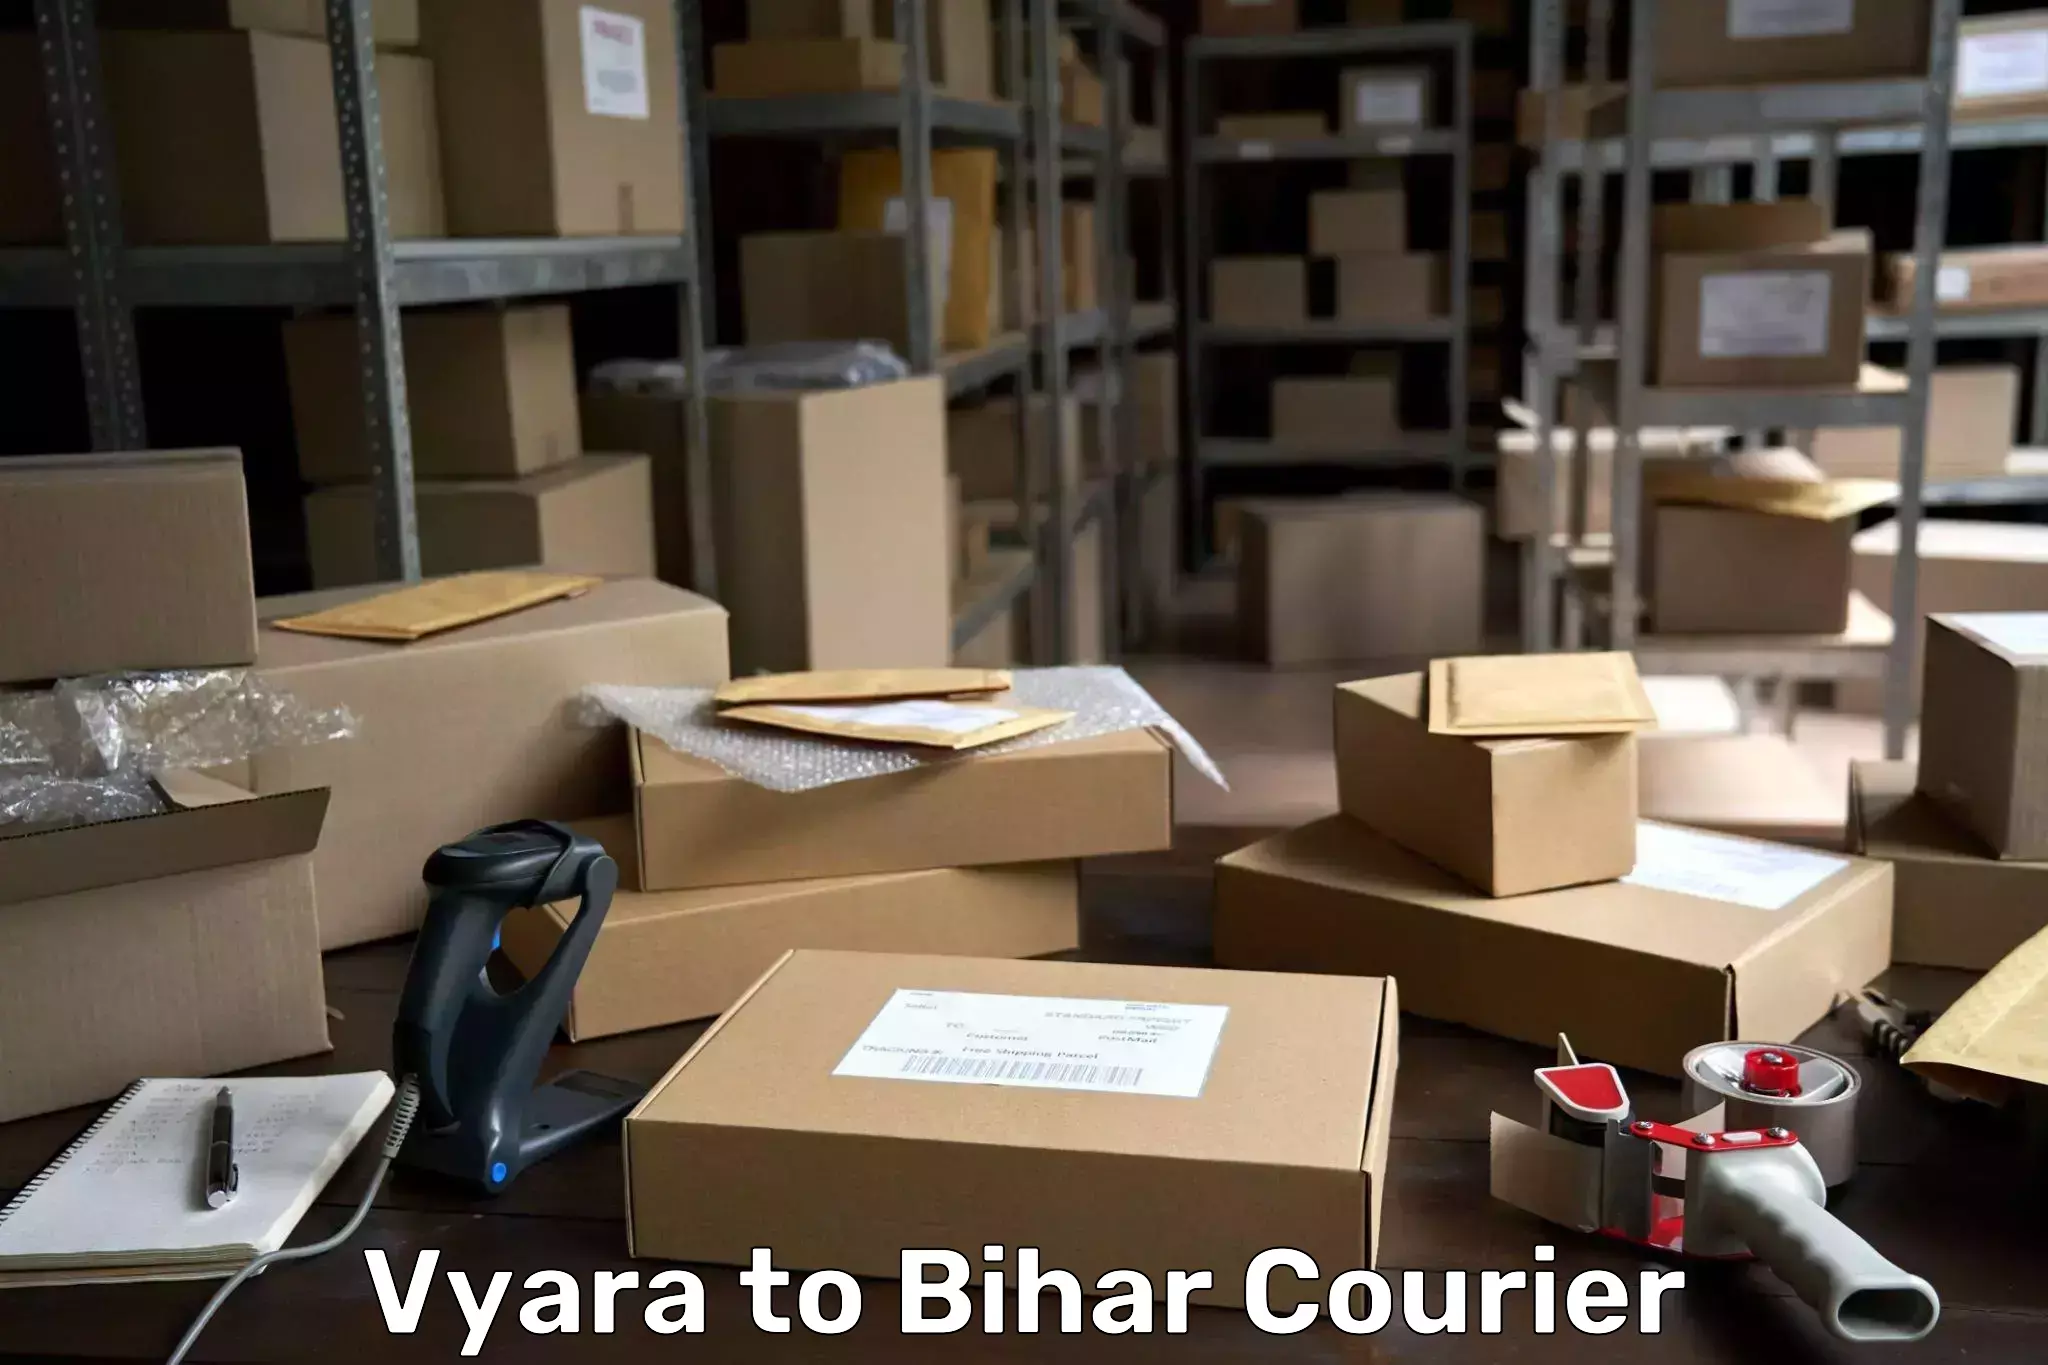 24-hour courier service Vyara to Alamnagar